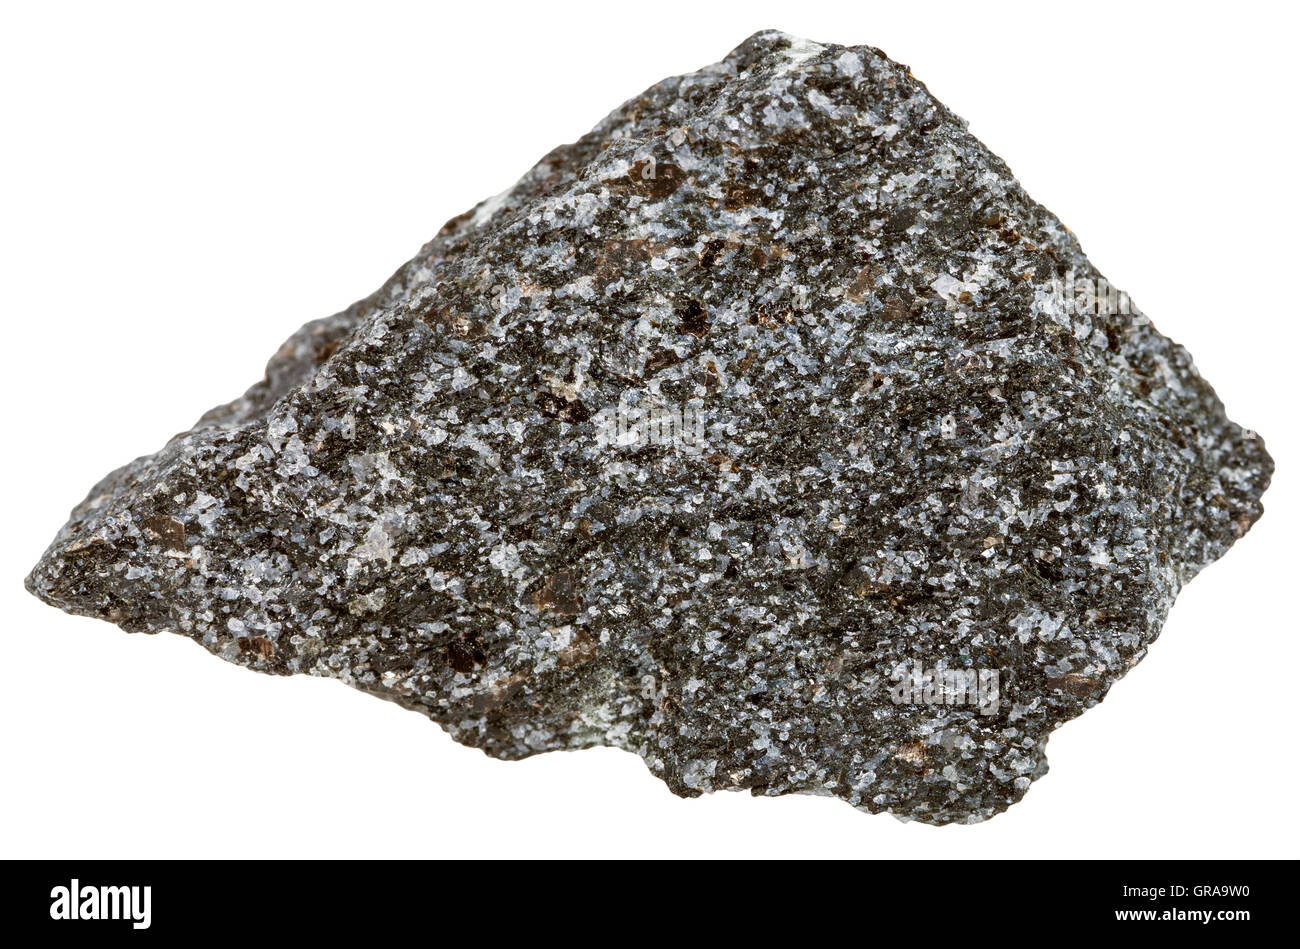 Makroaufnahmen von Eruptivgestein Proben - Nepheline Syenit Mineral isoliert auf weißem Hintergrund Stockfoto